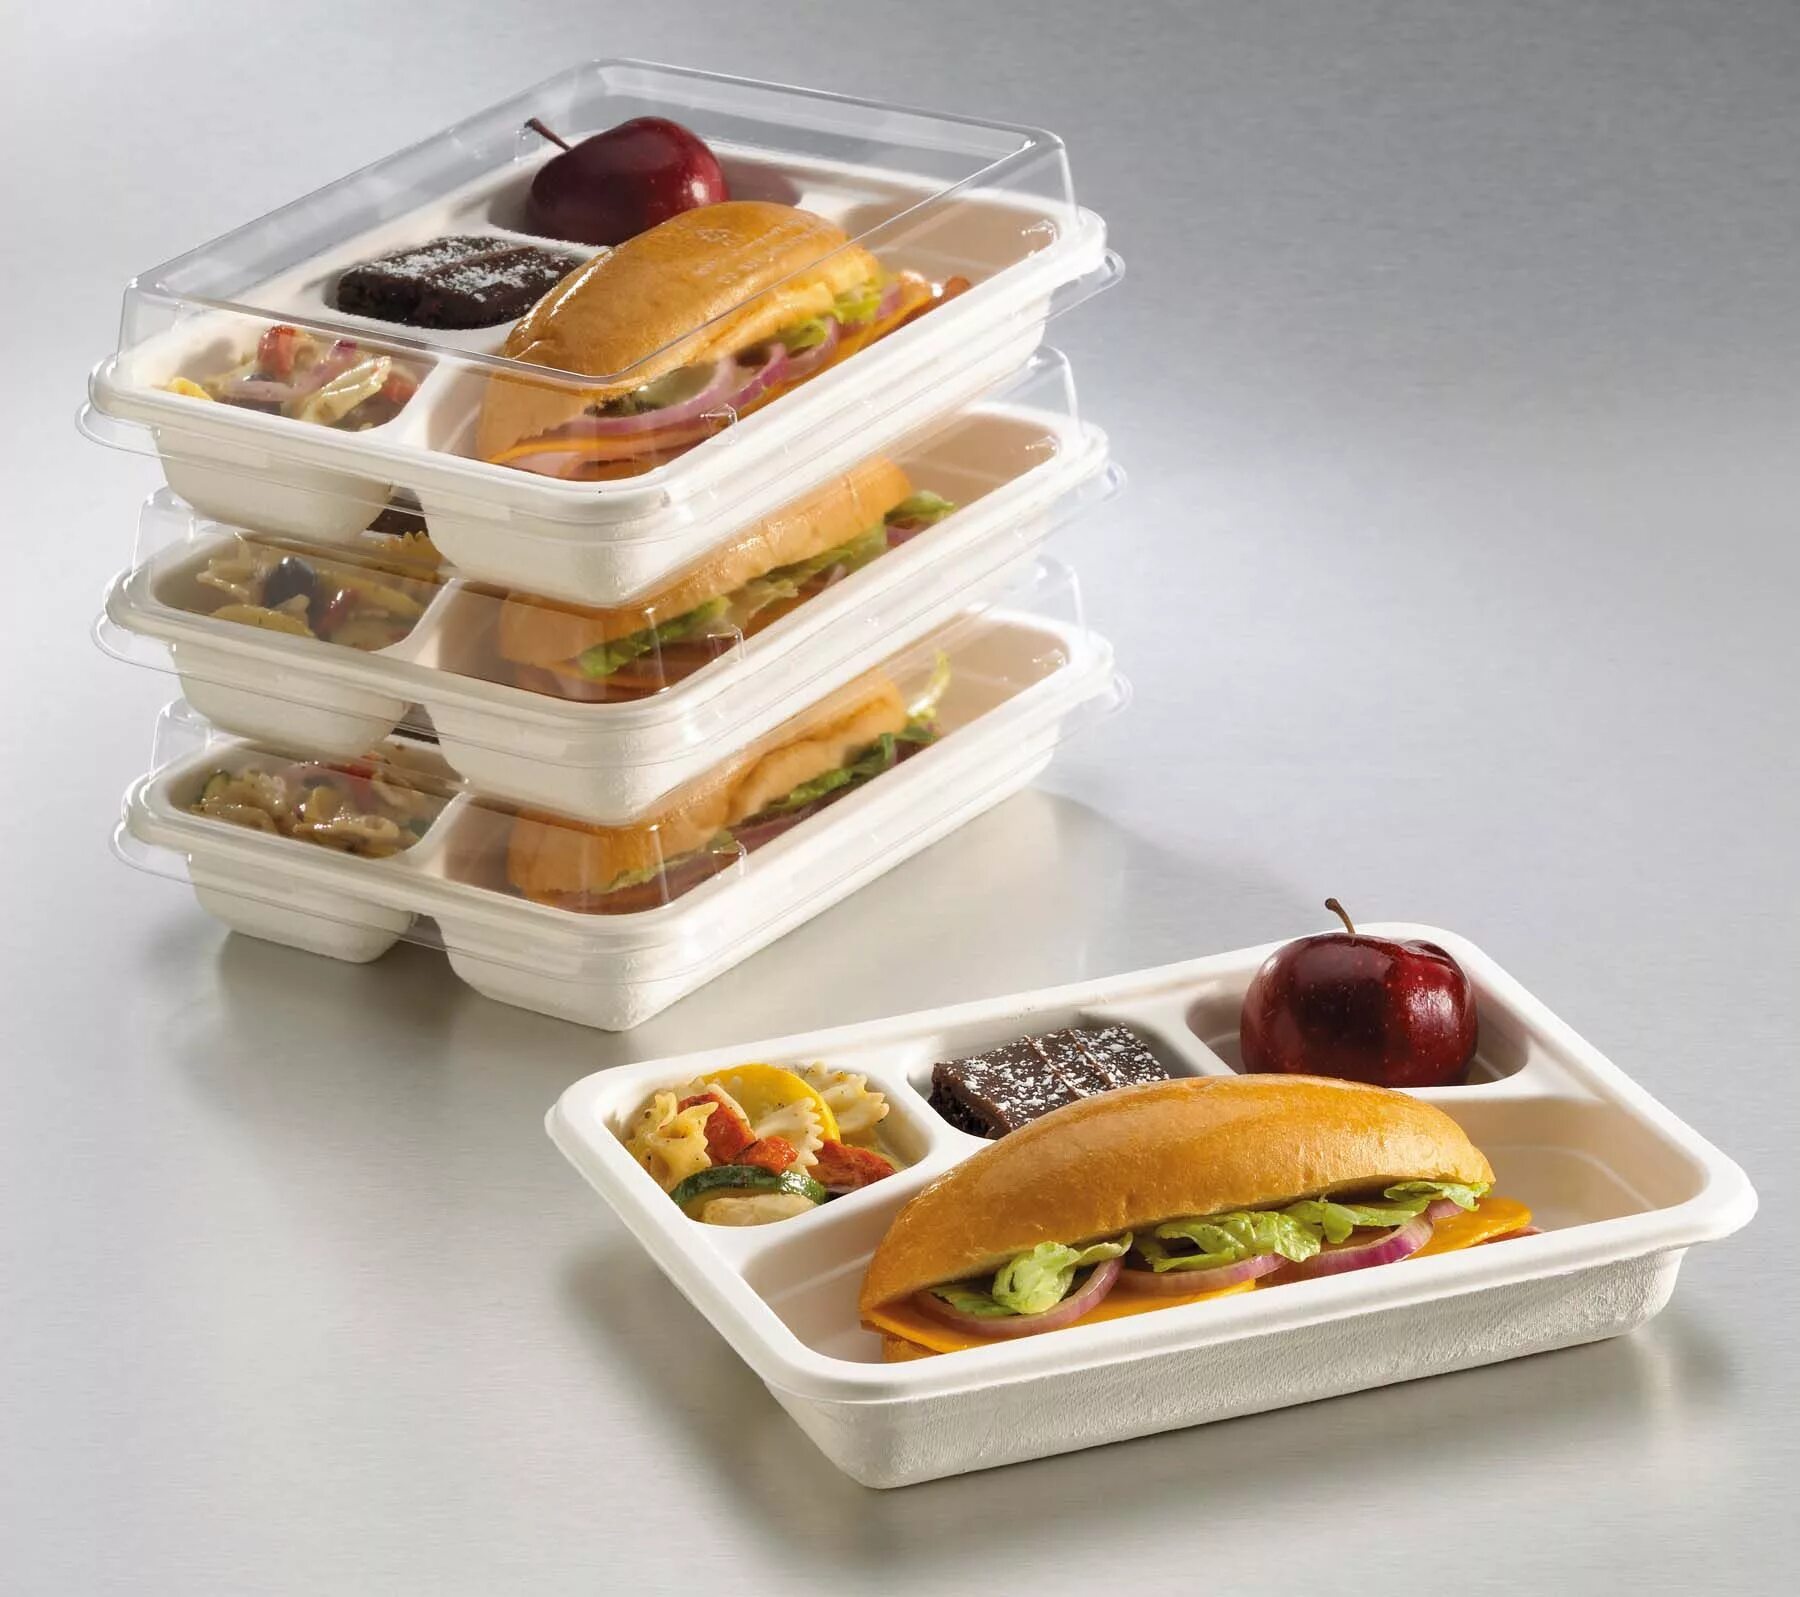 Готовая упаковка 2. Контейнер "комплексный обед". Готовые обеды в контейнерах. Упаковка для еды на вынос. Готовые блюда в контейнерах.